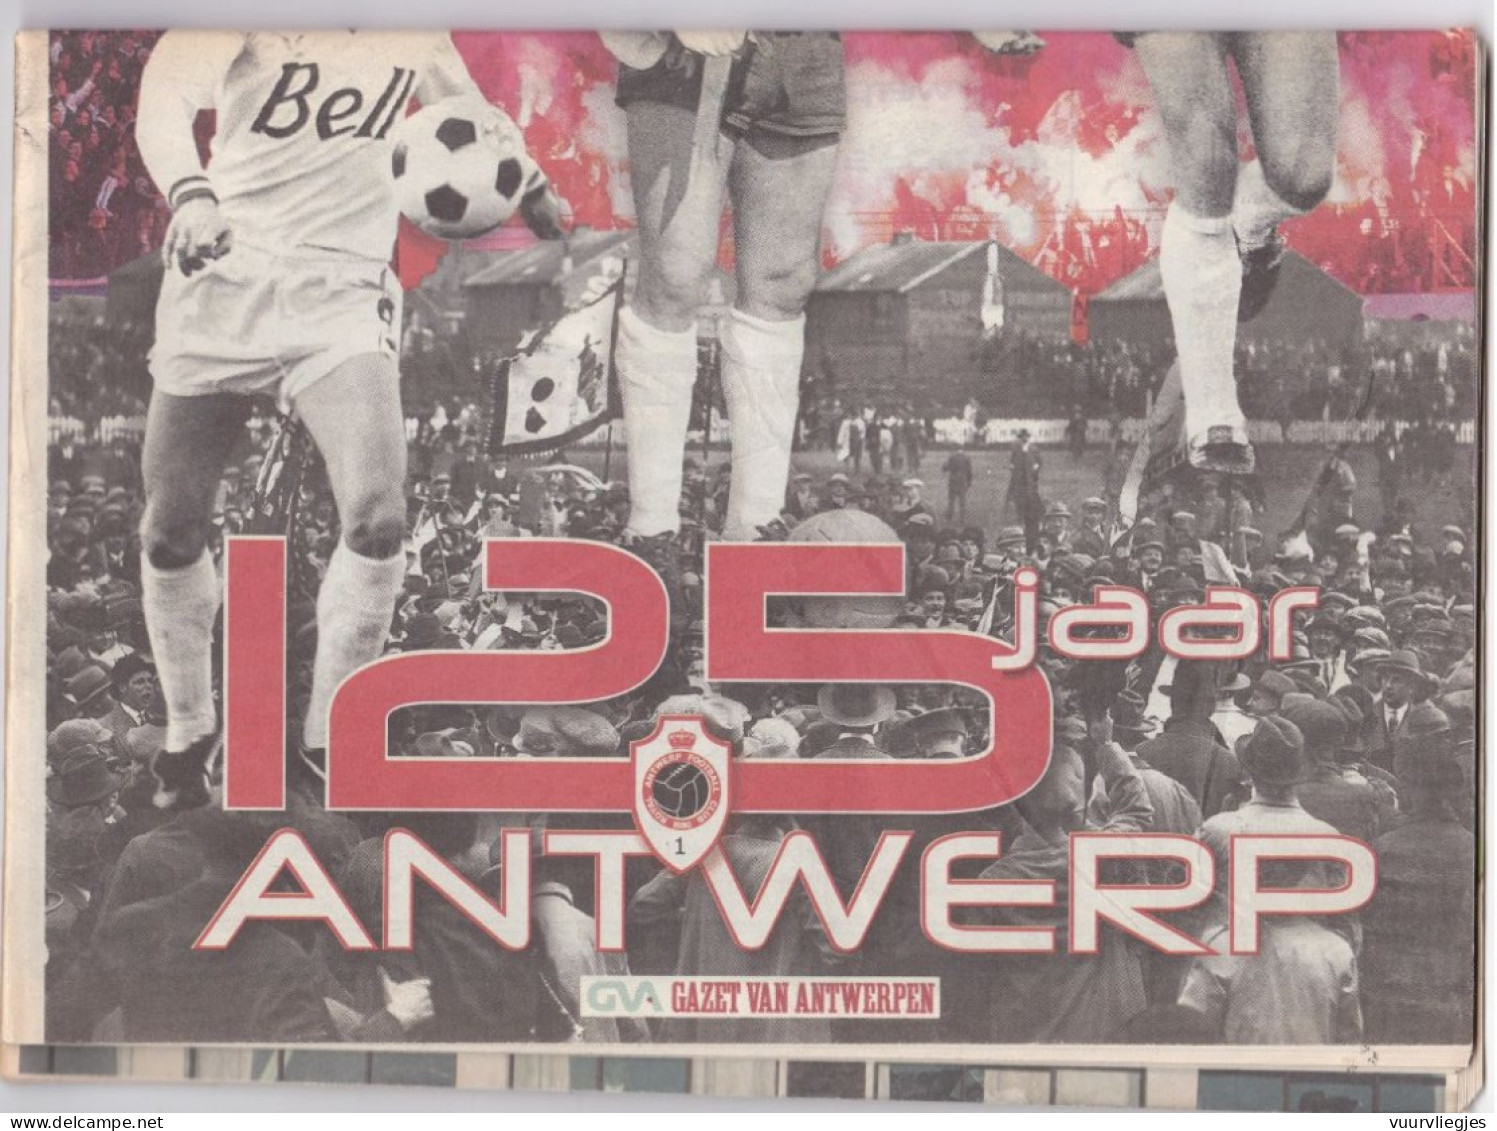 125 Jaar Antwerp - Sports